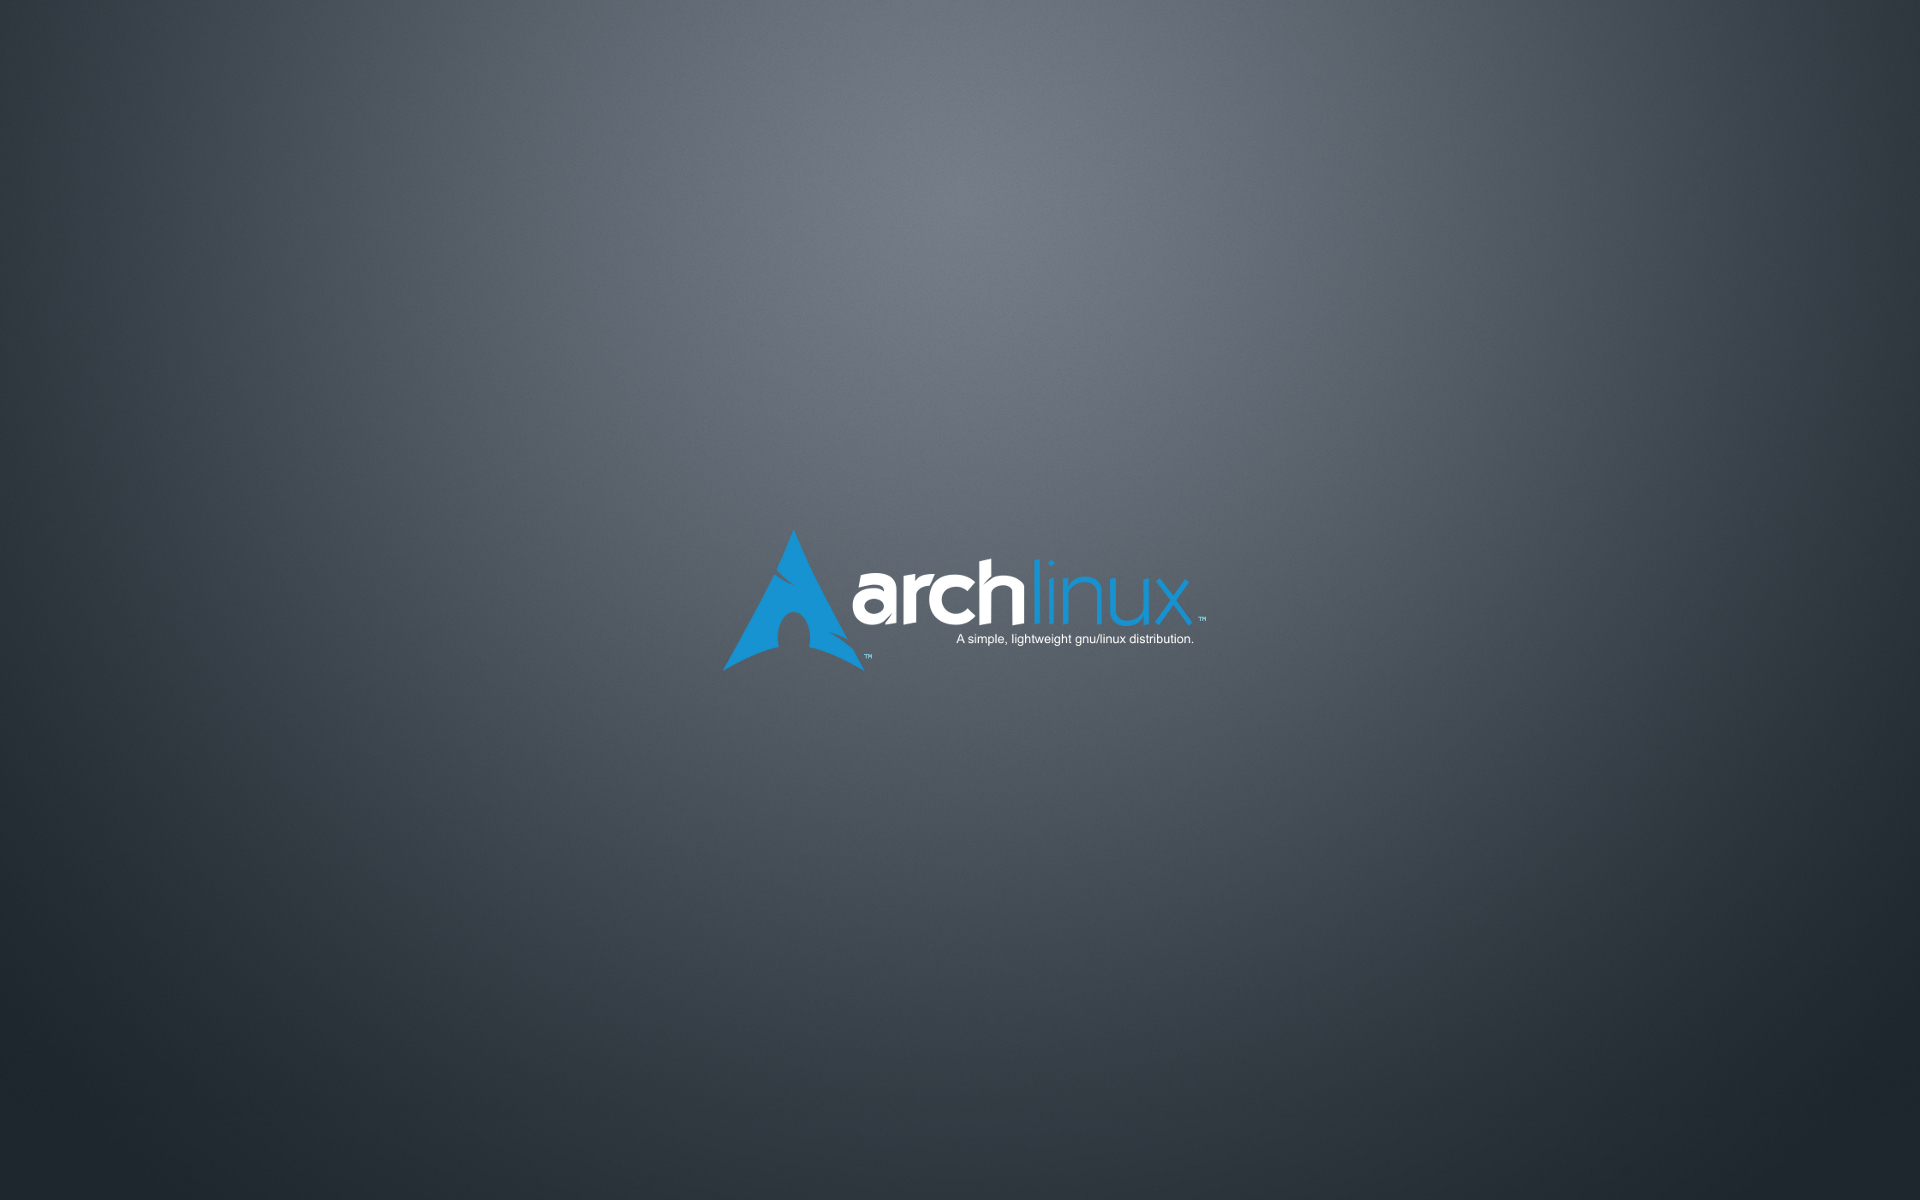 Ubuntronics 25 Wallpapers de Arch Linux